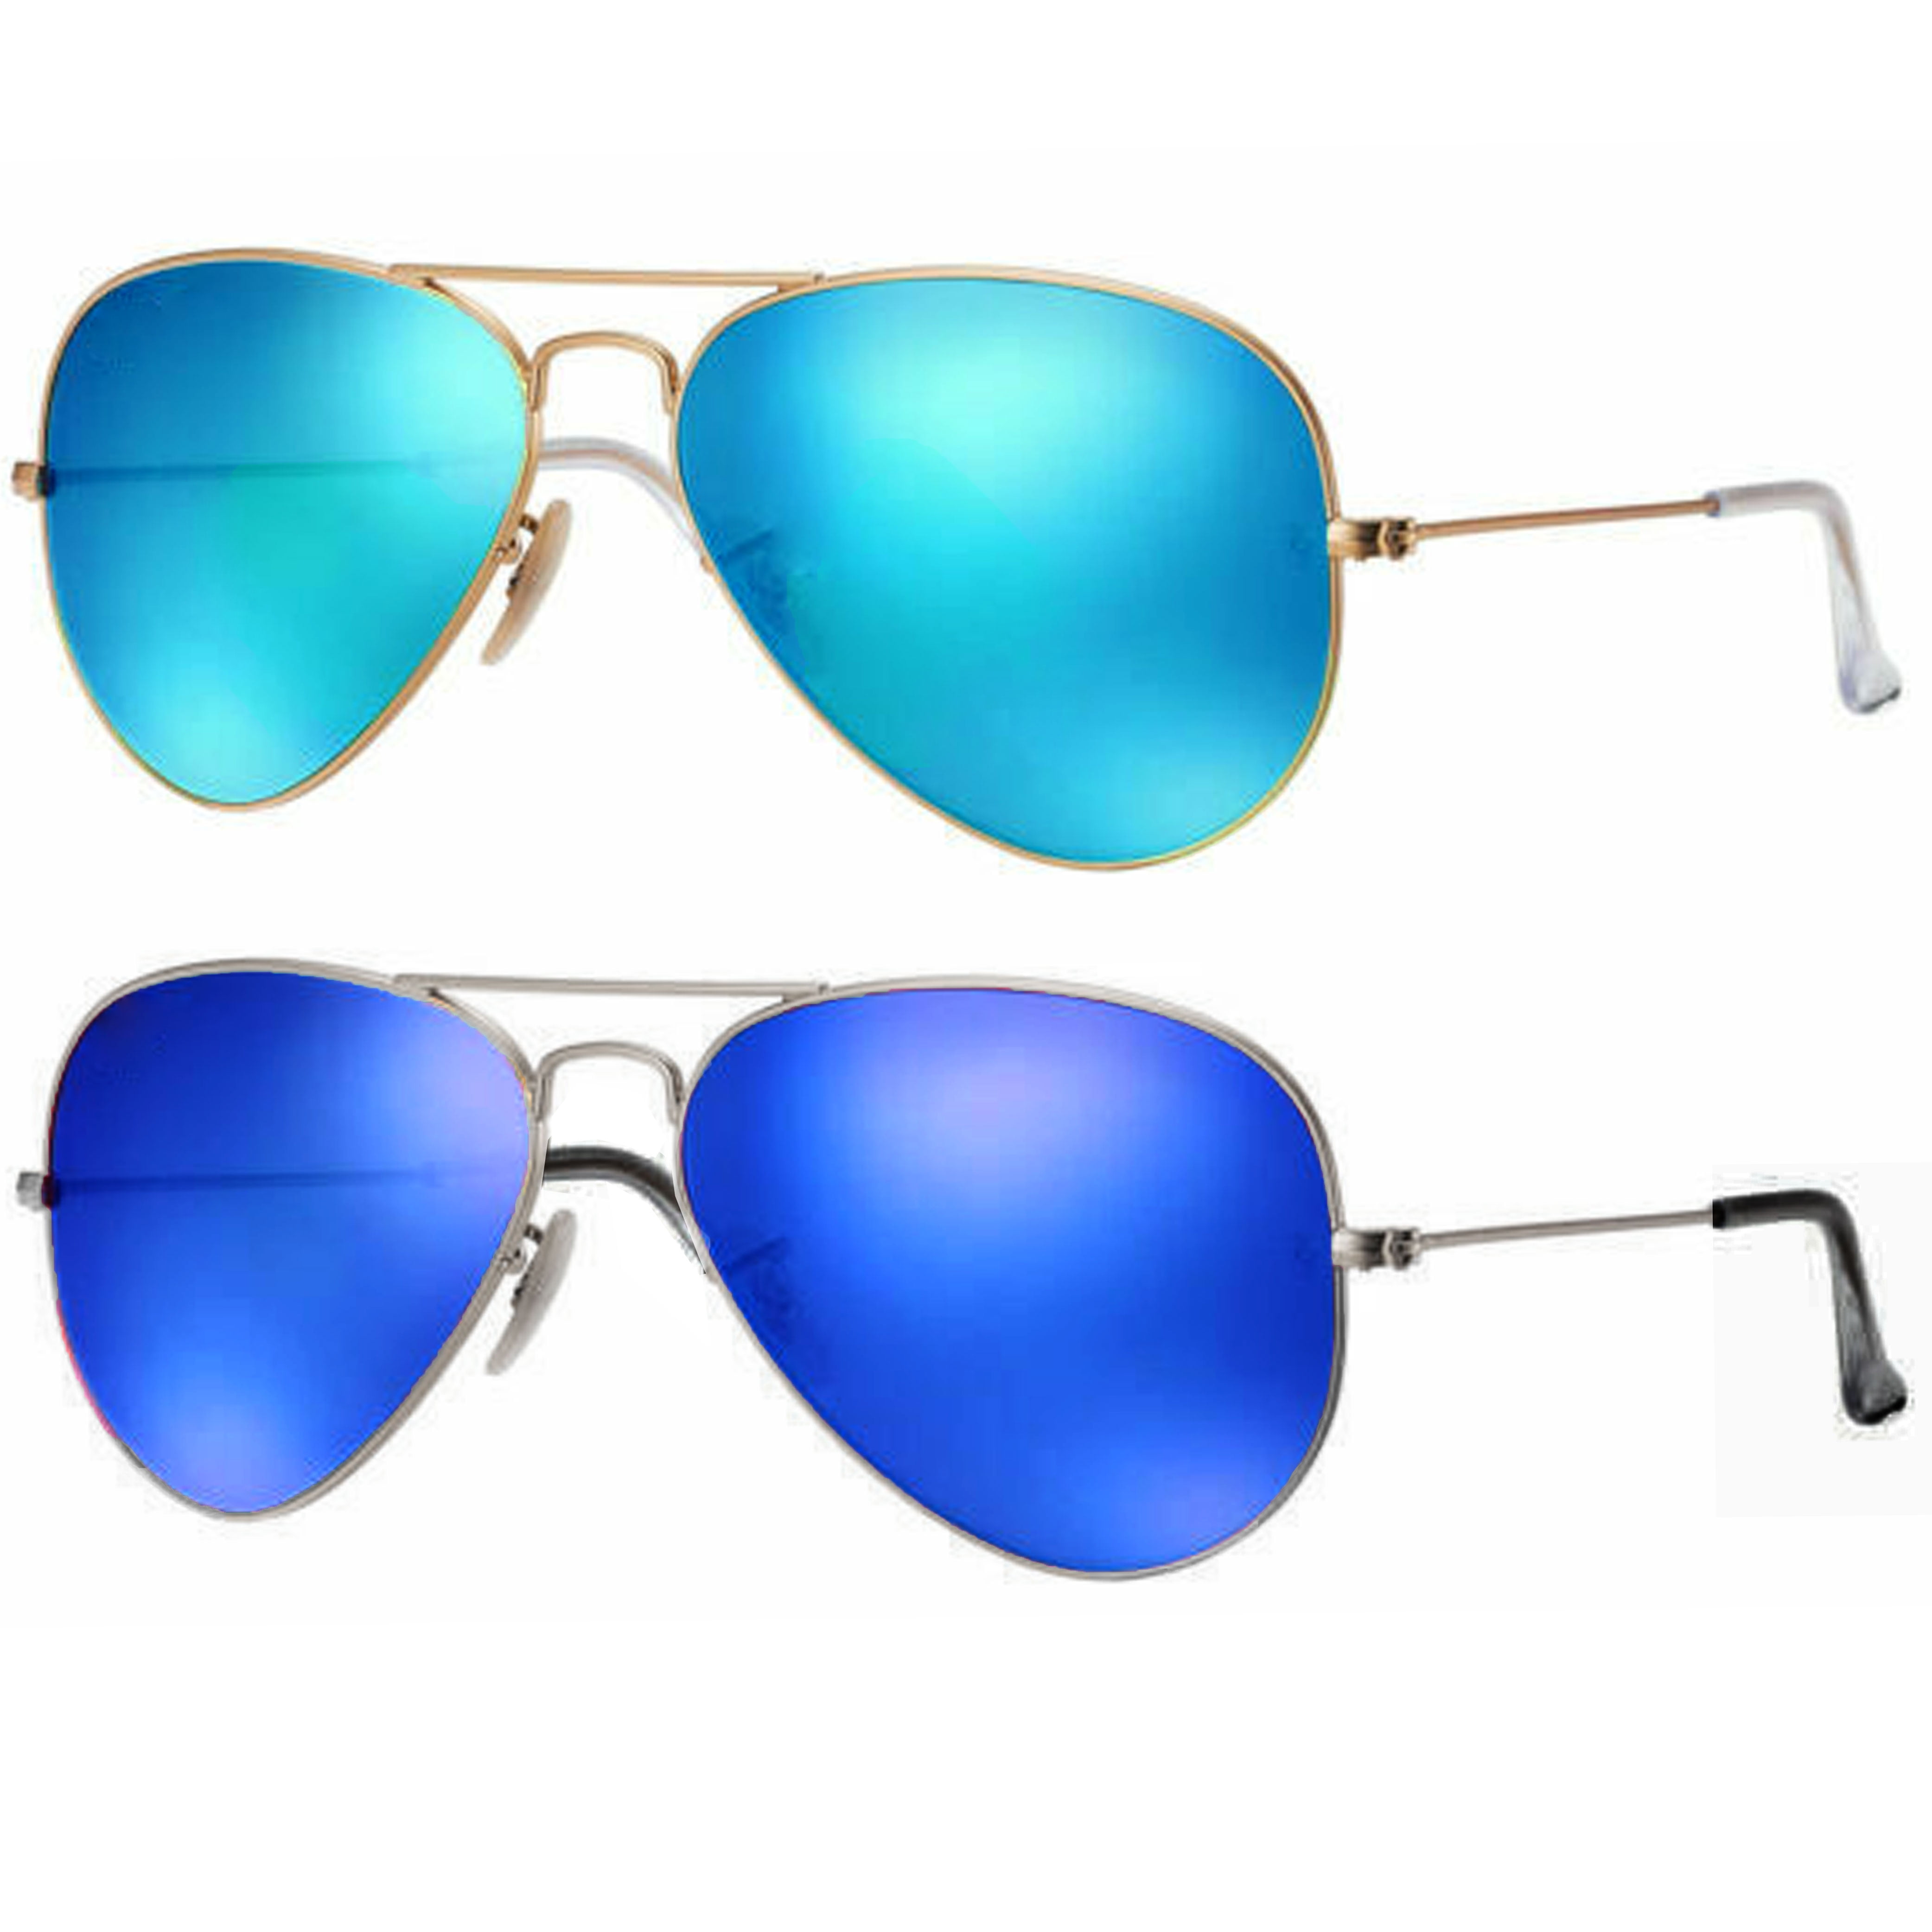 Buy STYLISH GUYS Aviator Sunglasses Blue For Men & Women Online @ Best  Prices in India | Flipkart.com